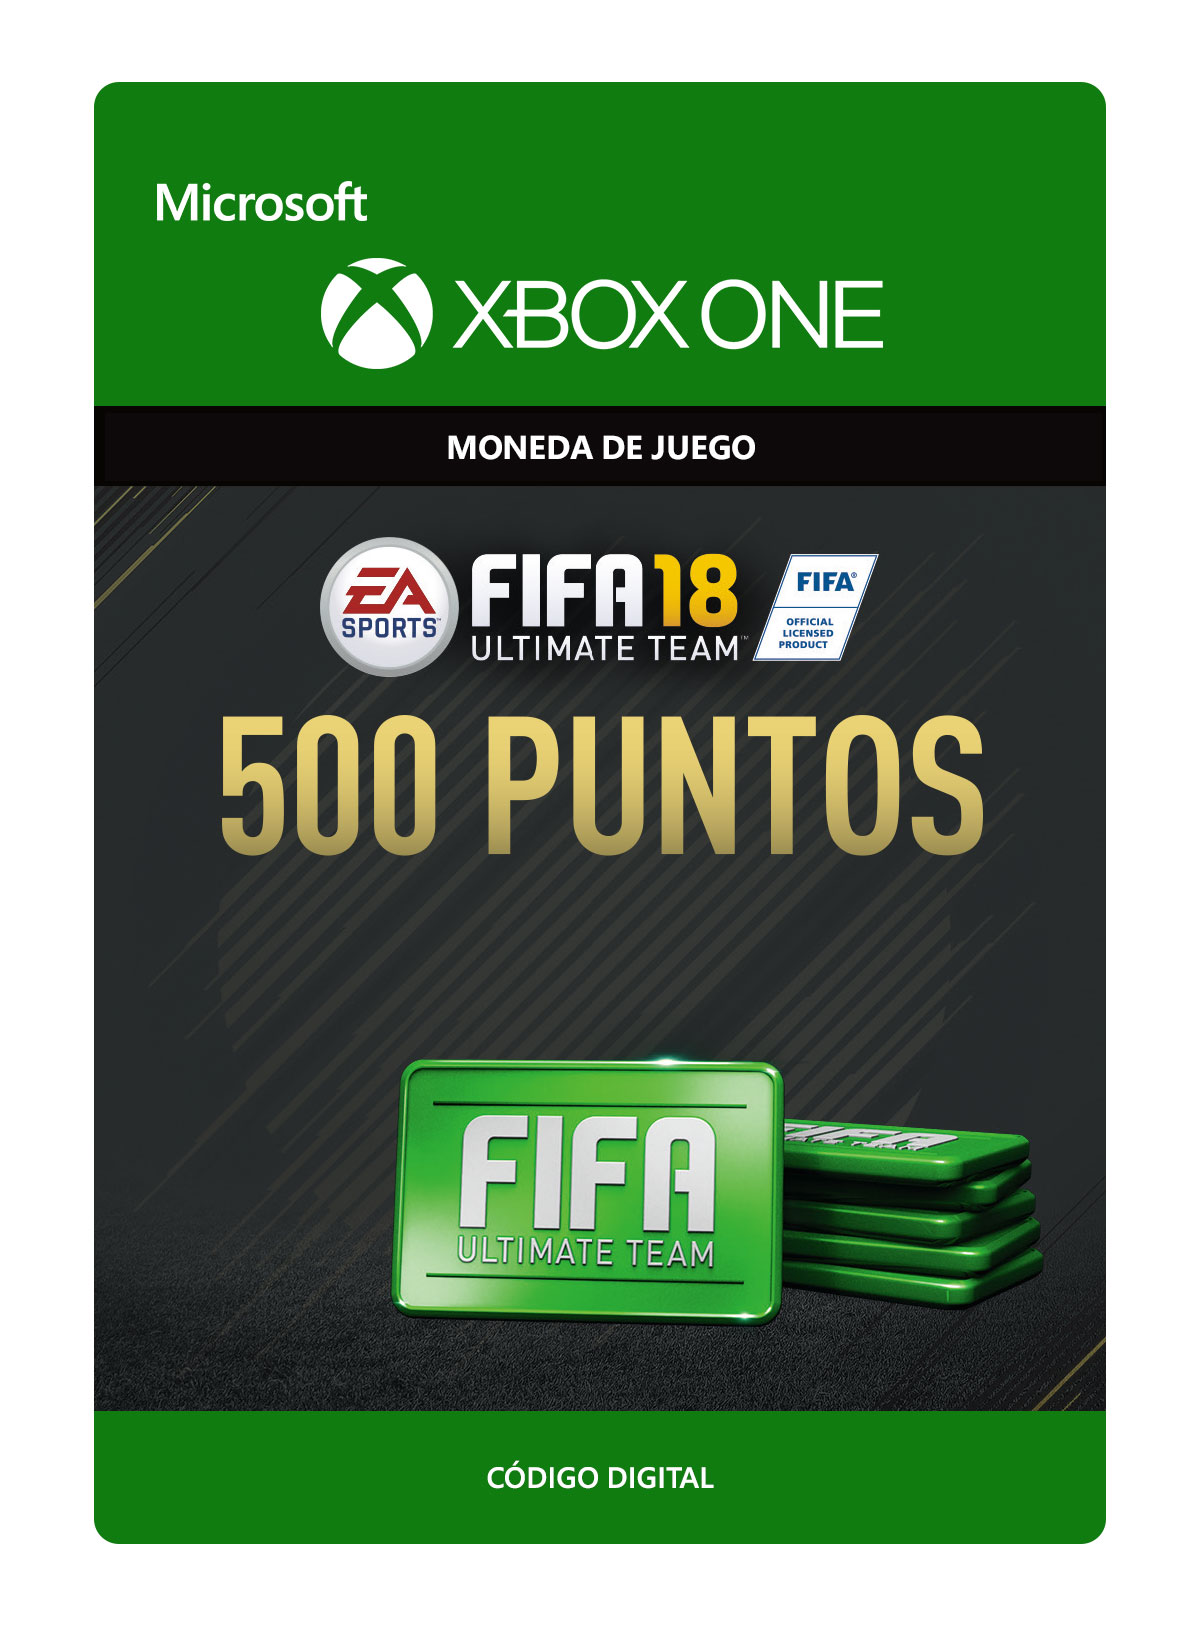 Xbox One - Fifa 18: Ultimate Team Fifa Points 500 - Creditos/Monedas para Juegos